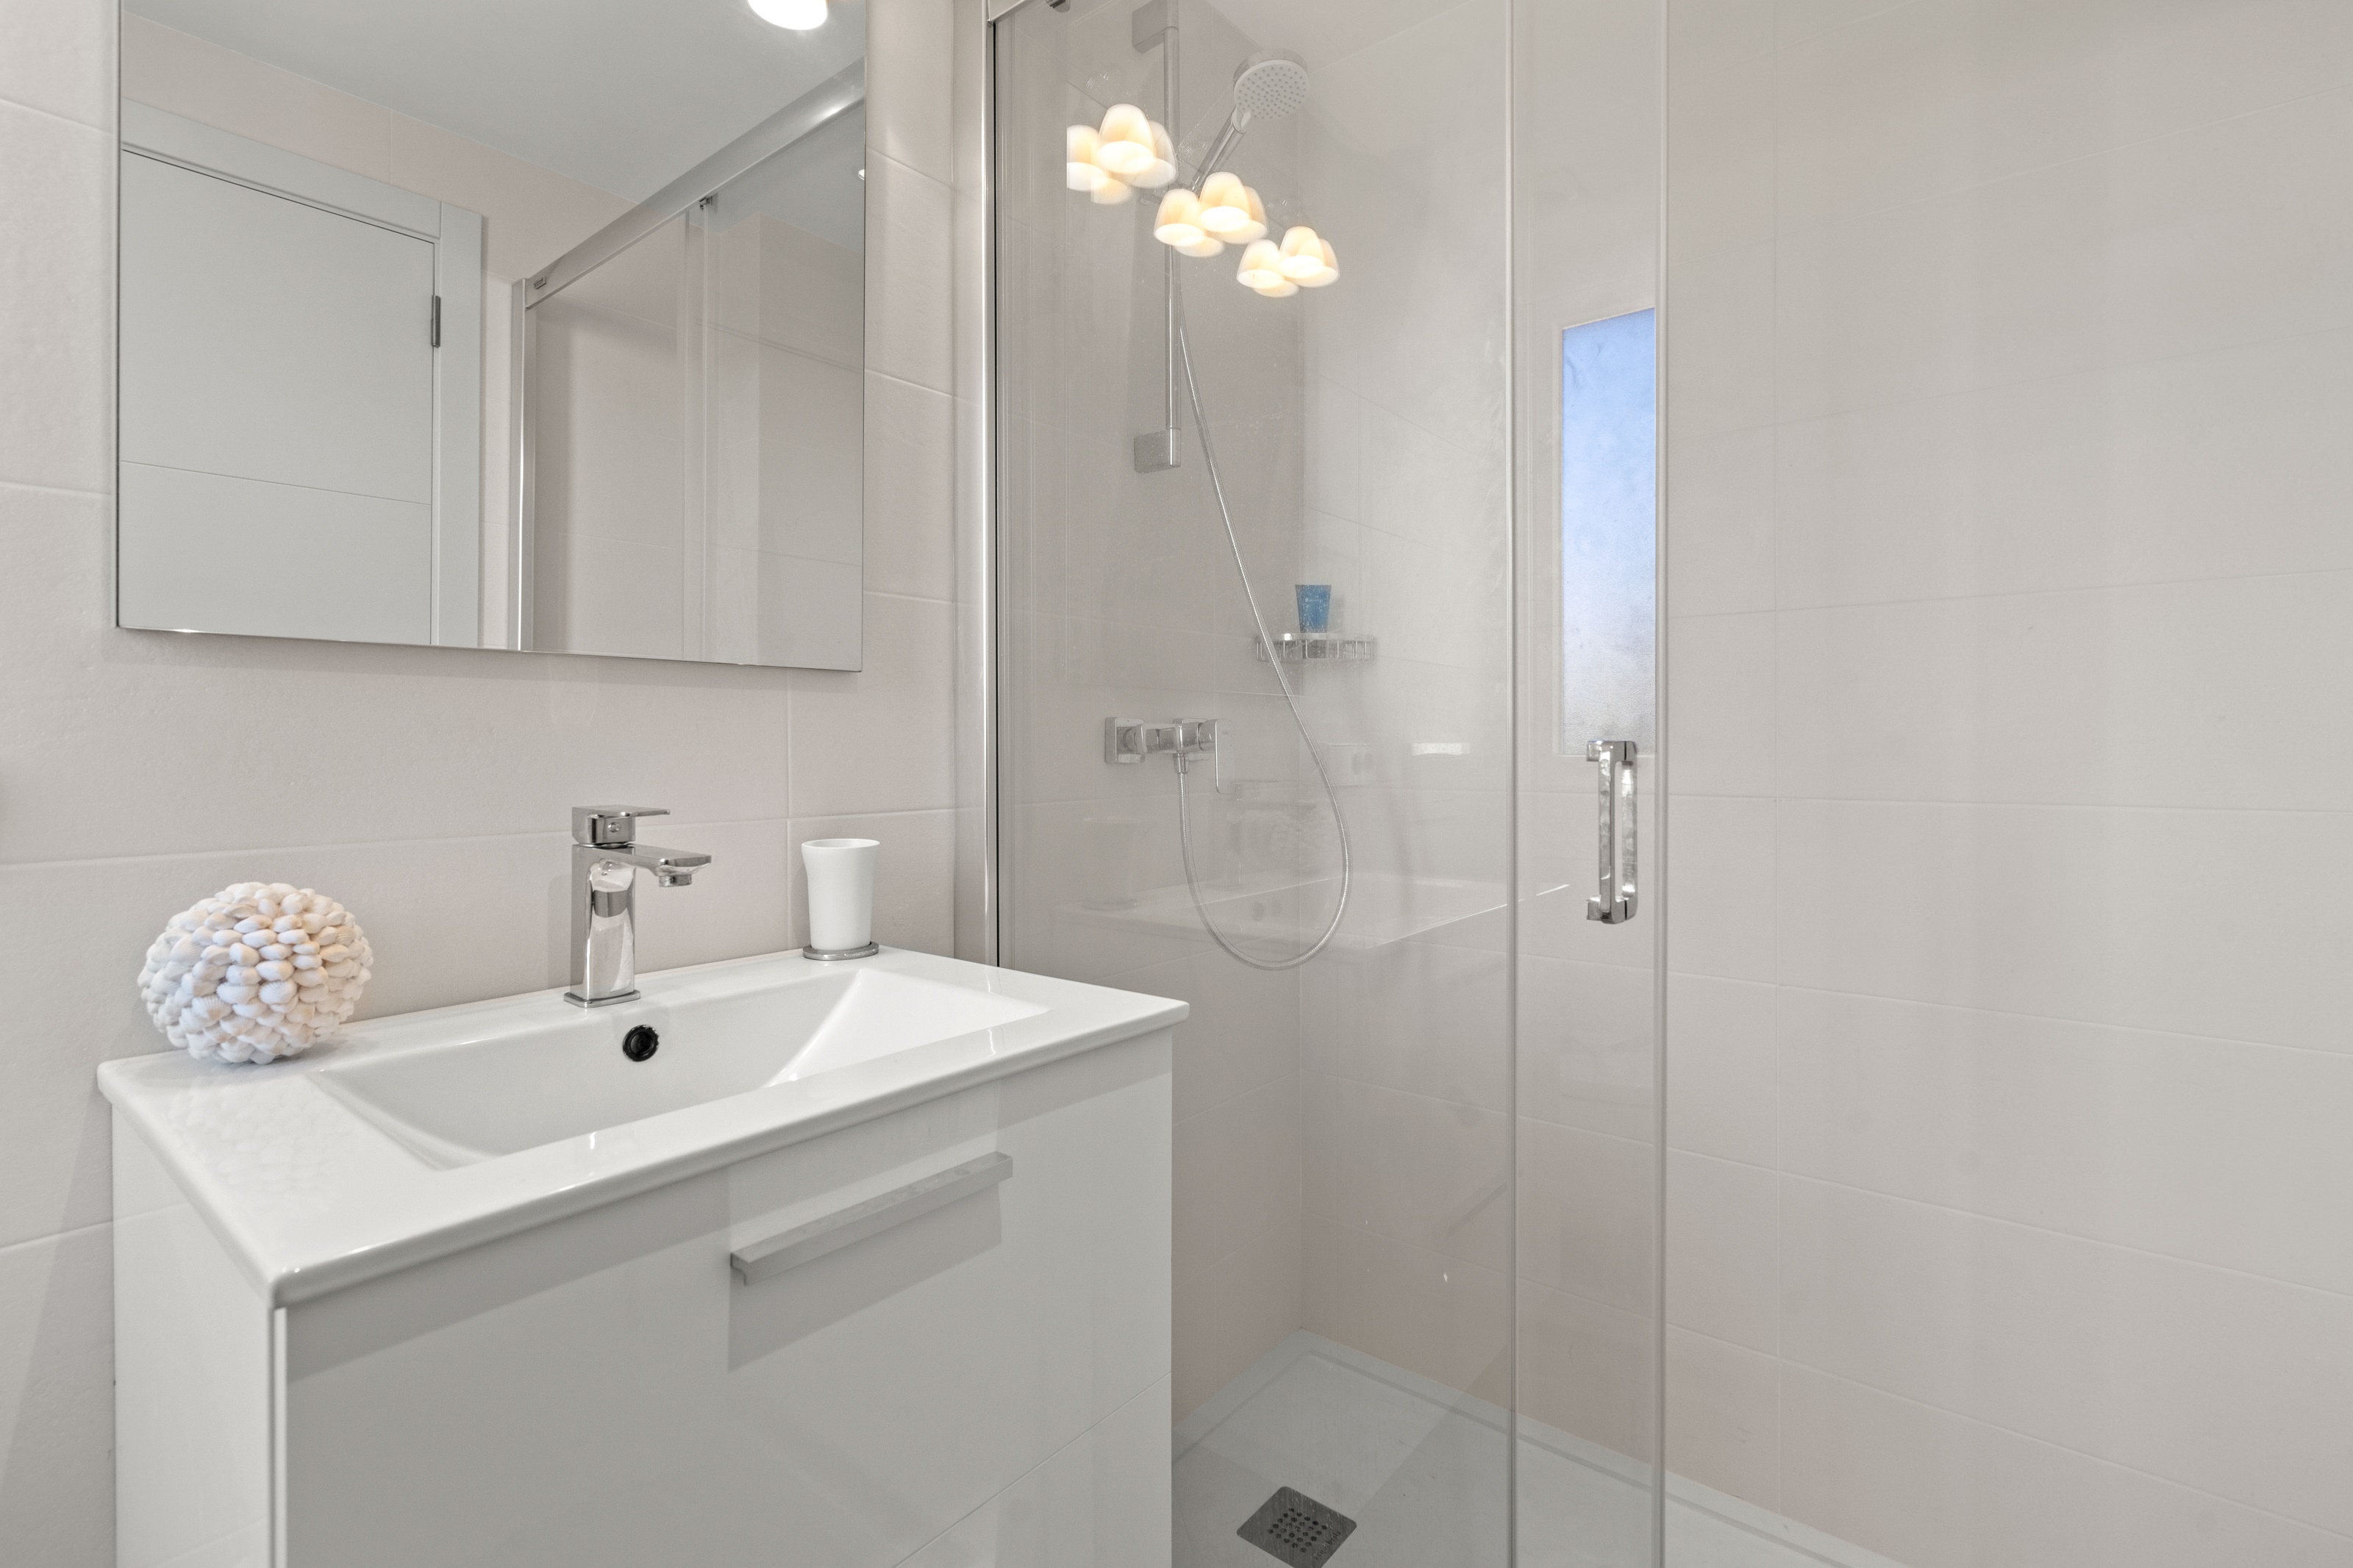 Salle de bain attenante avec douche dans une maison de luxe à Mercadal